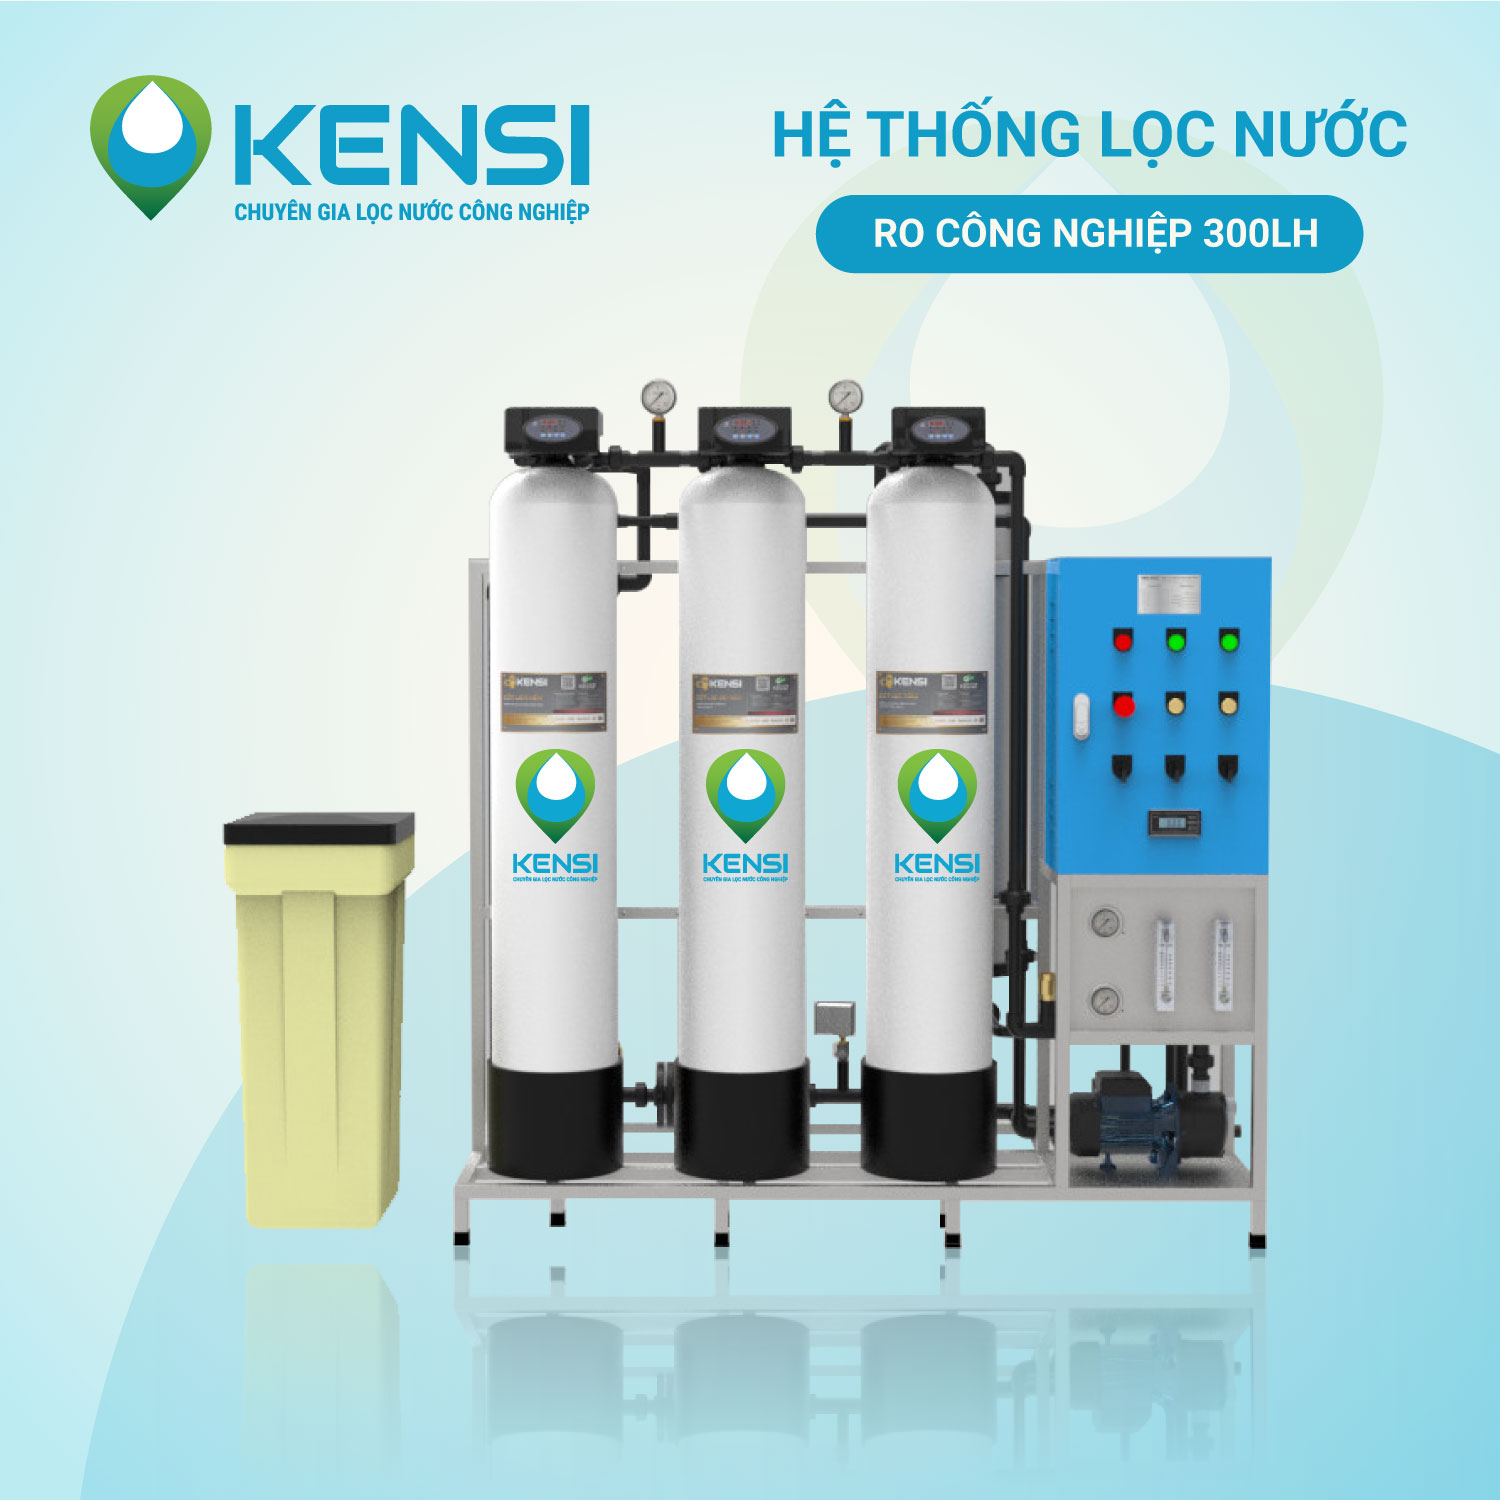 Máy lọc nước công nghiệp Kensi của Tekcom